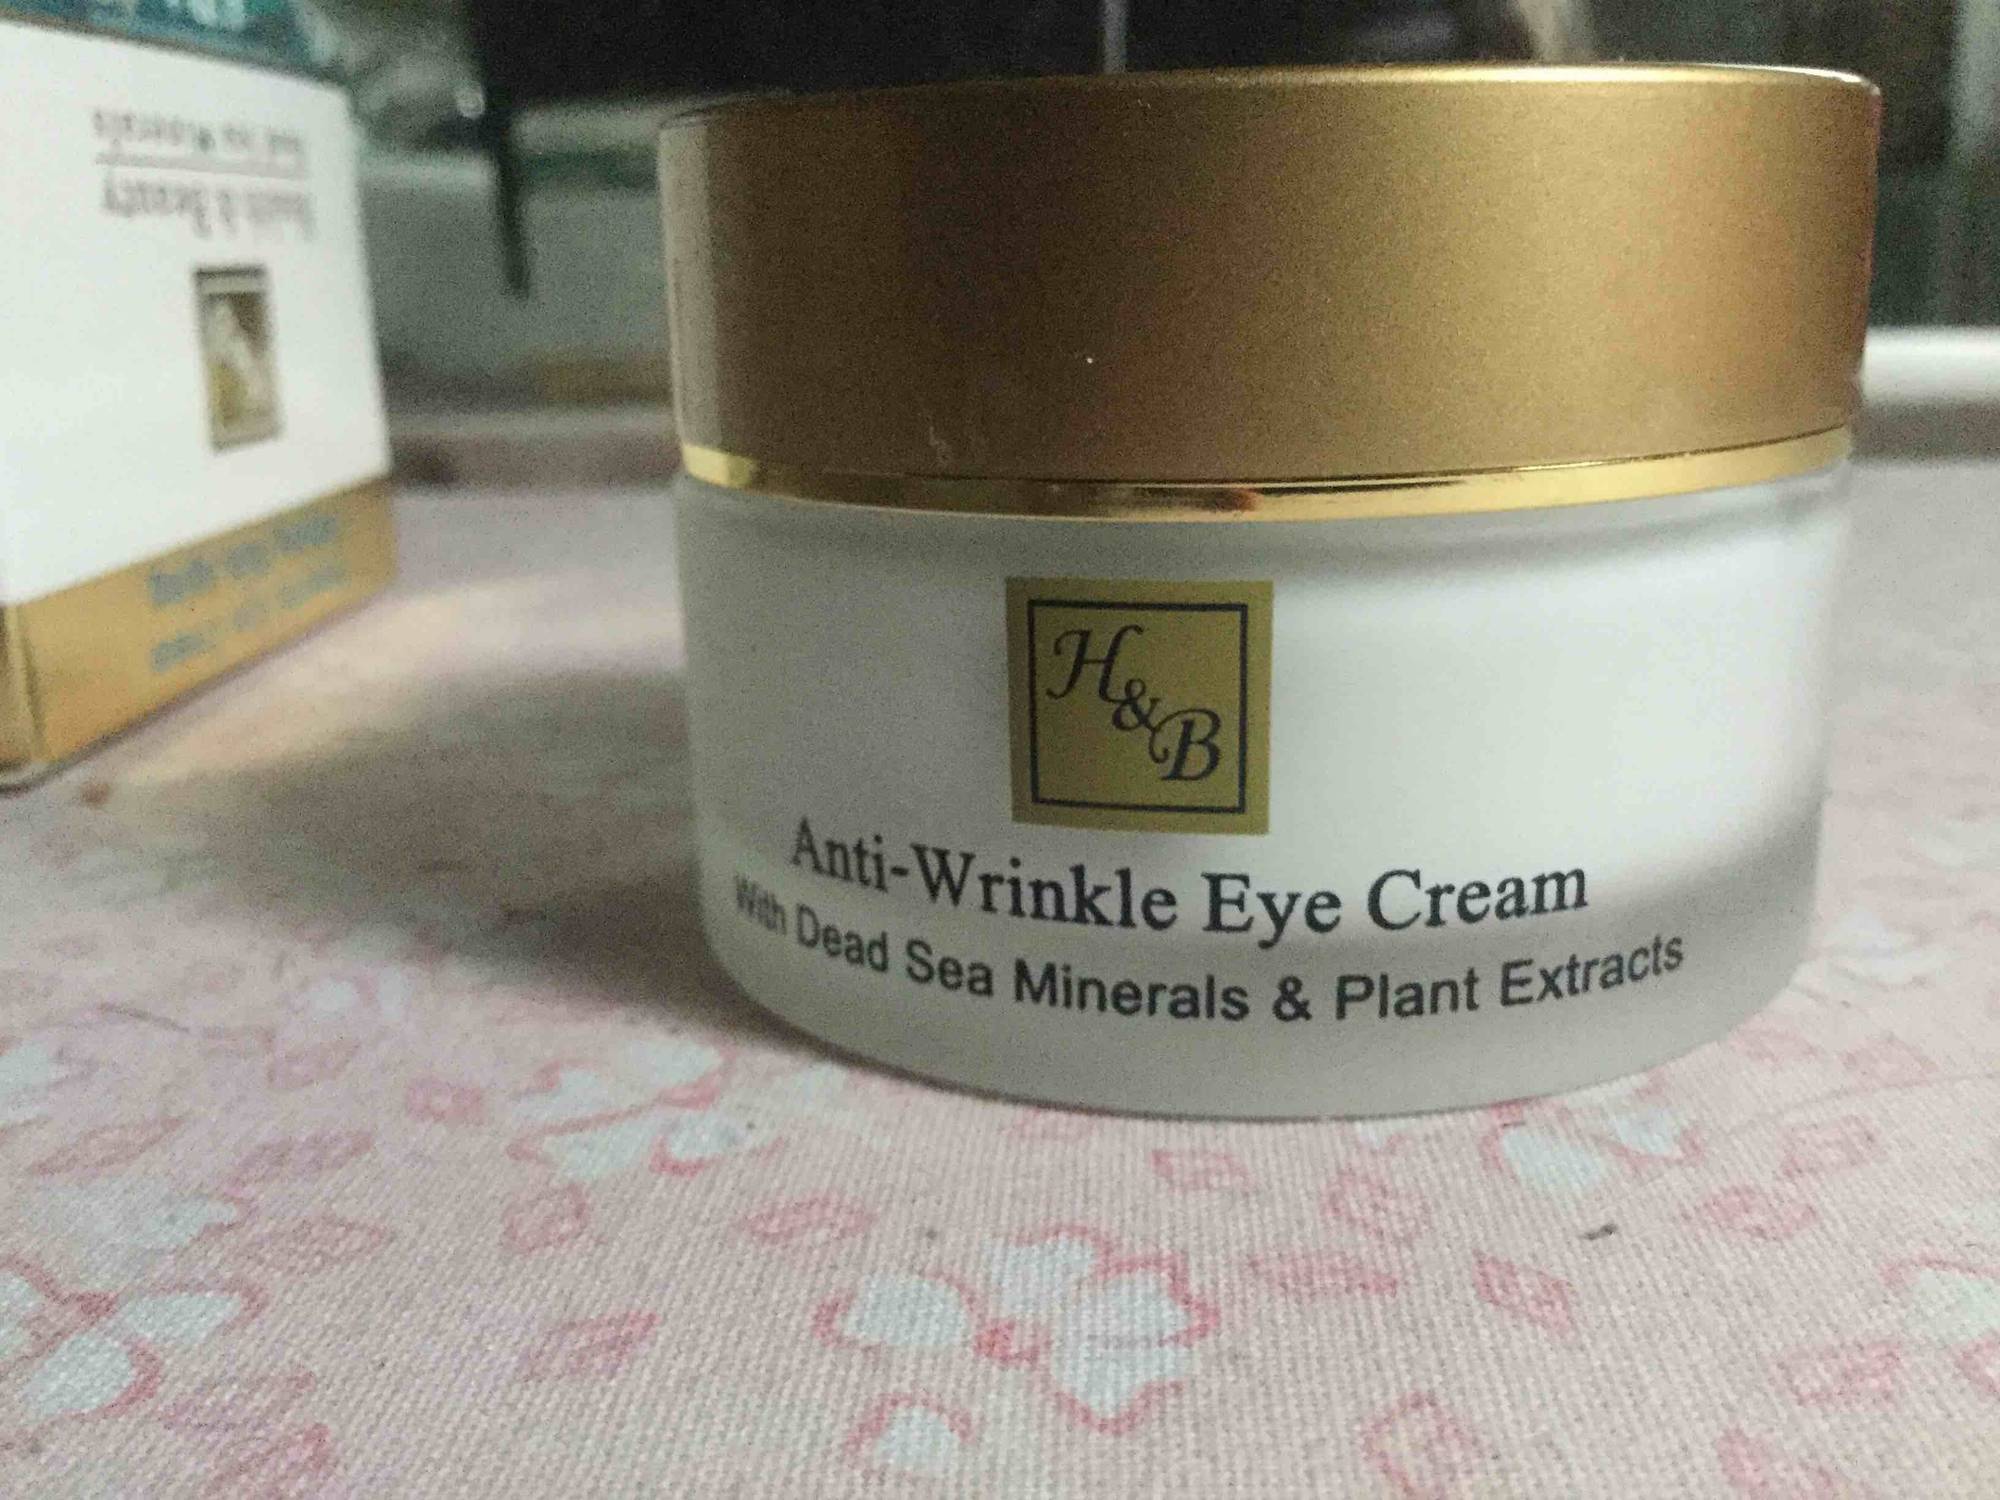 HEALTH & BEAUTY - Anti-wrinkle eye cream